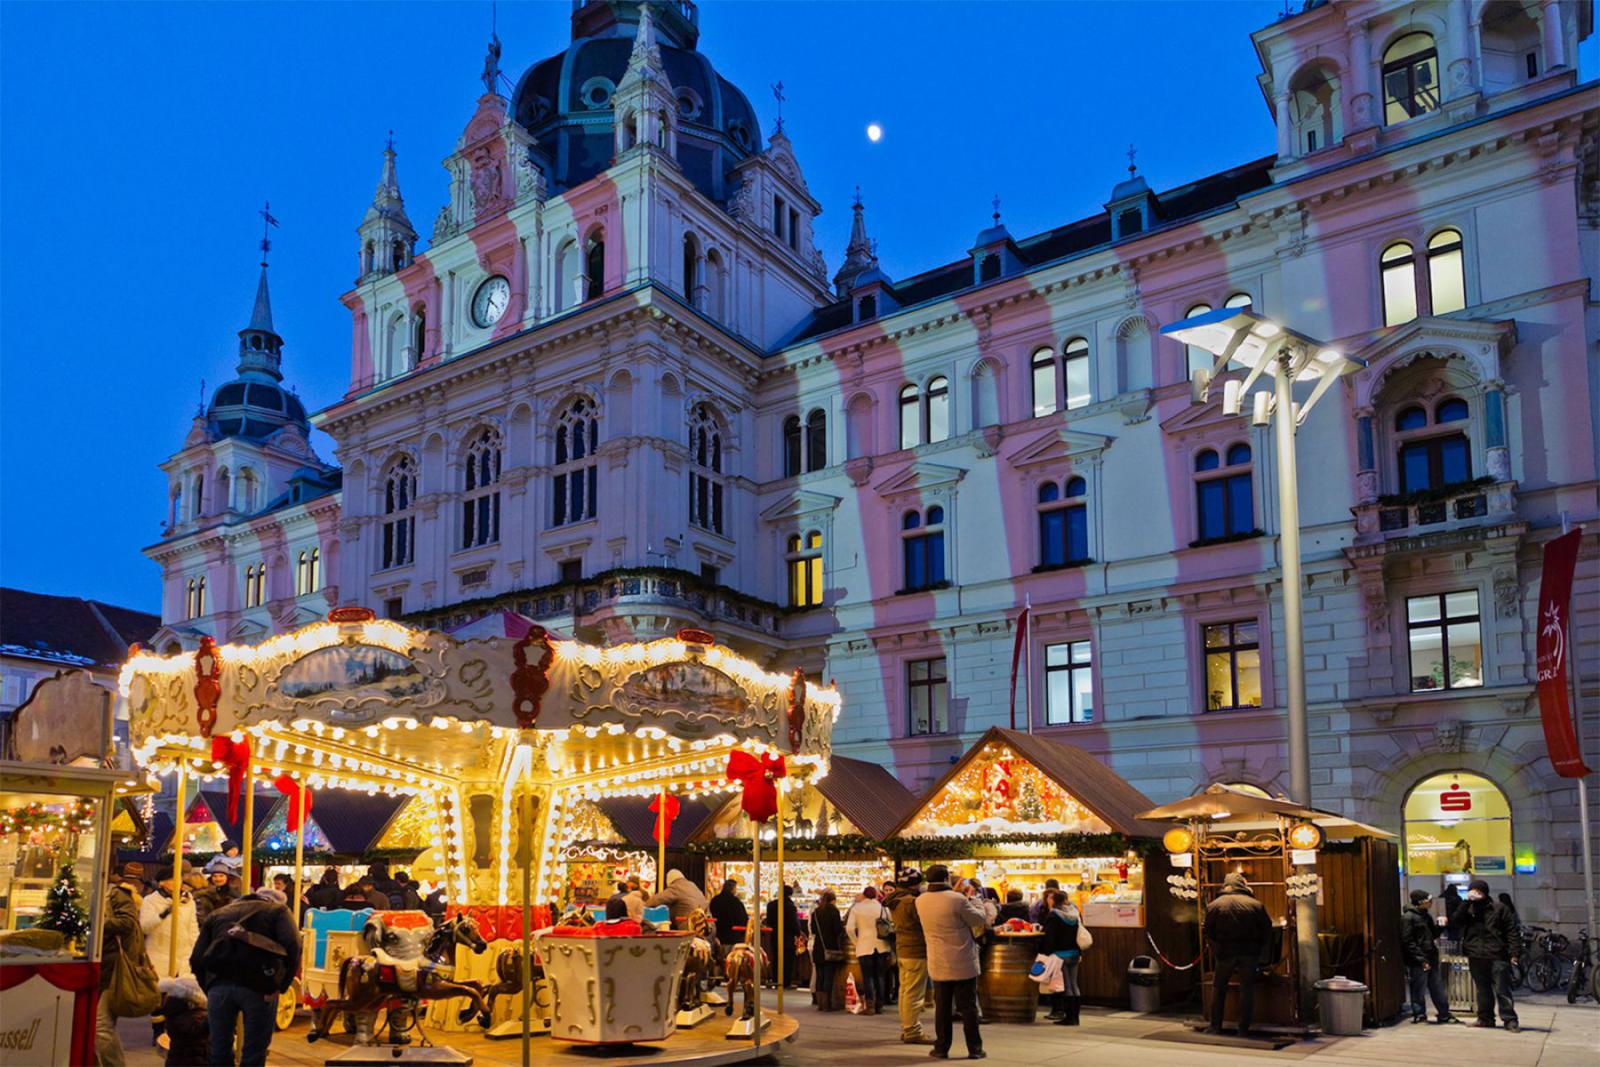 Kerst bij het stadhuis (Rathaus) van Graz